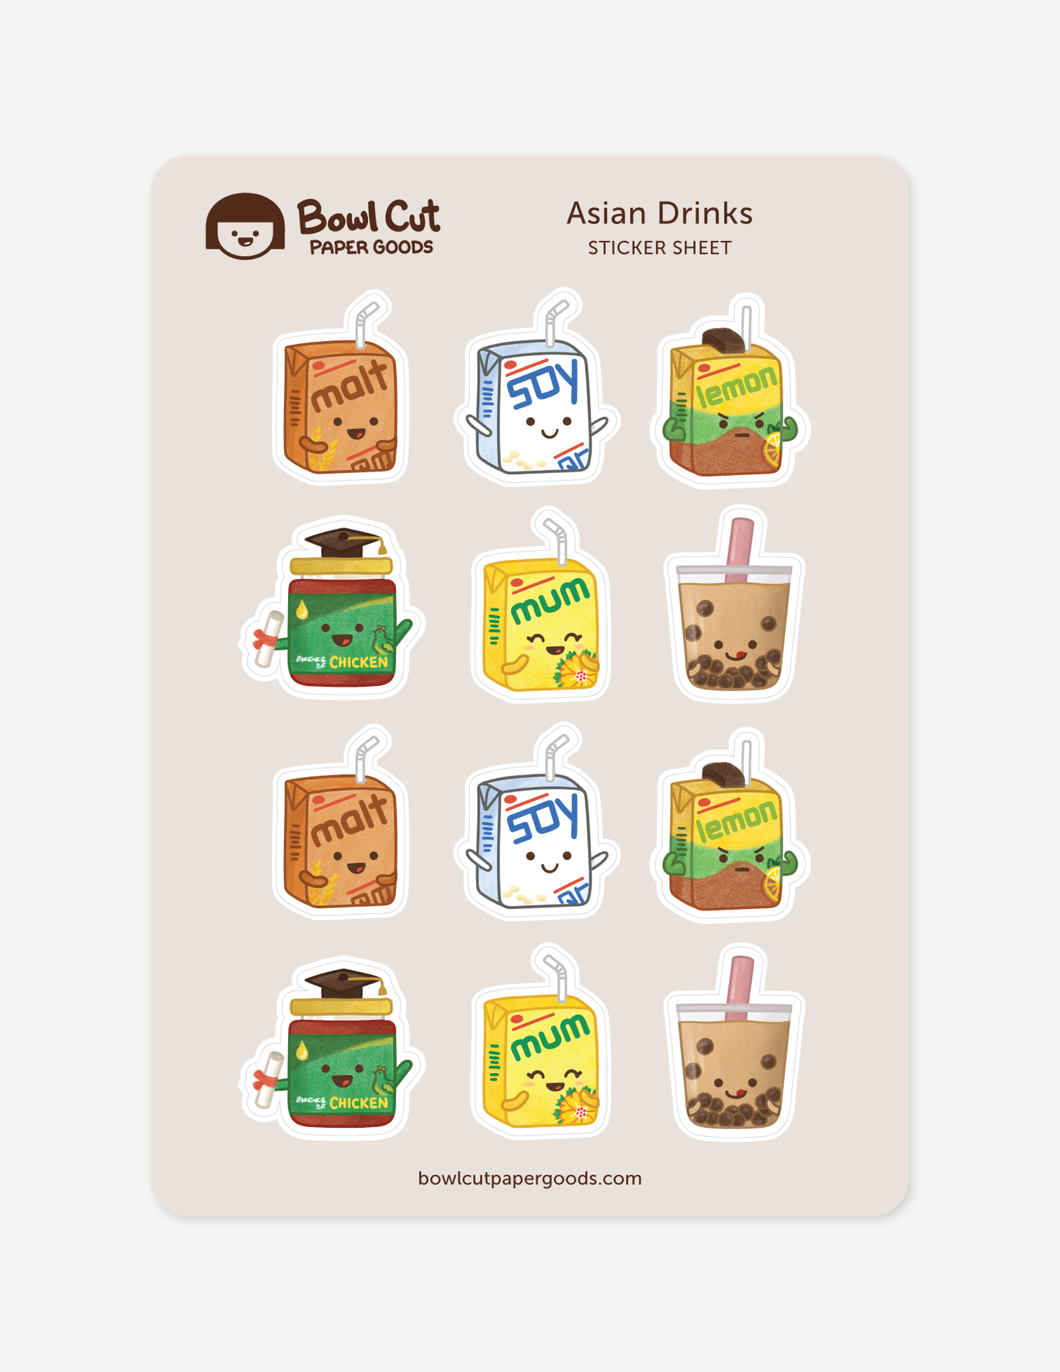 Asian Drinks sticker sheet